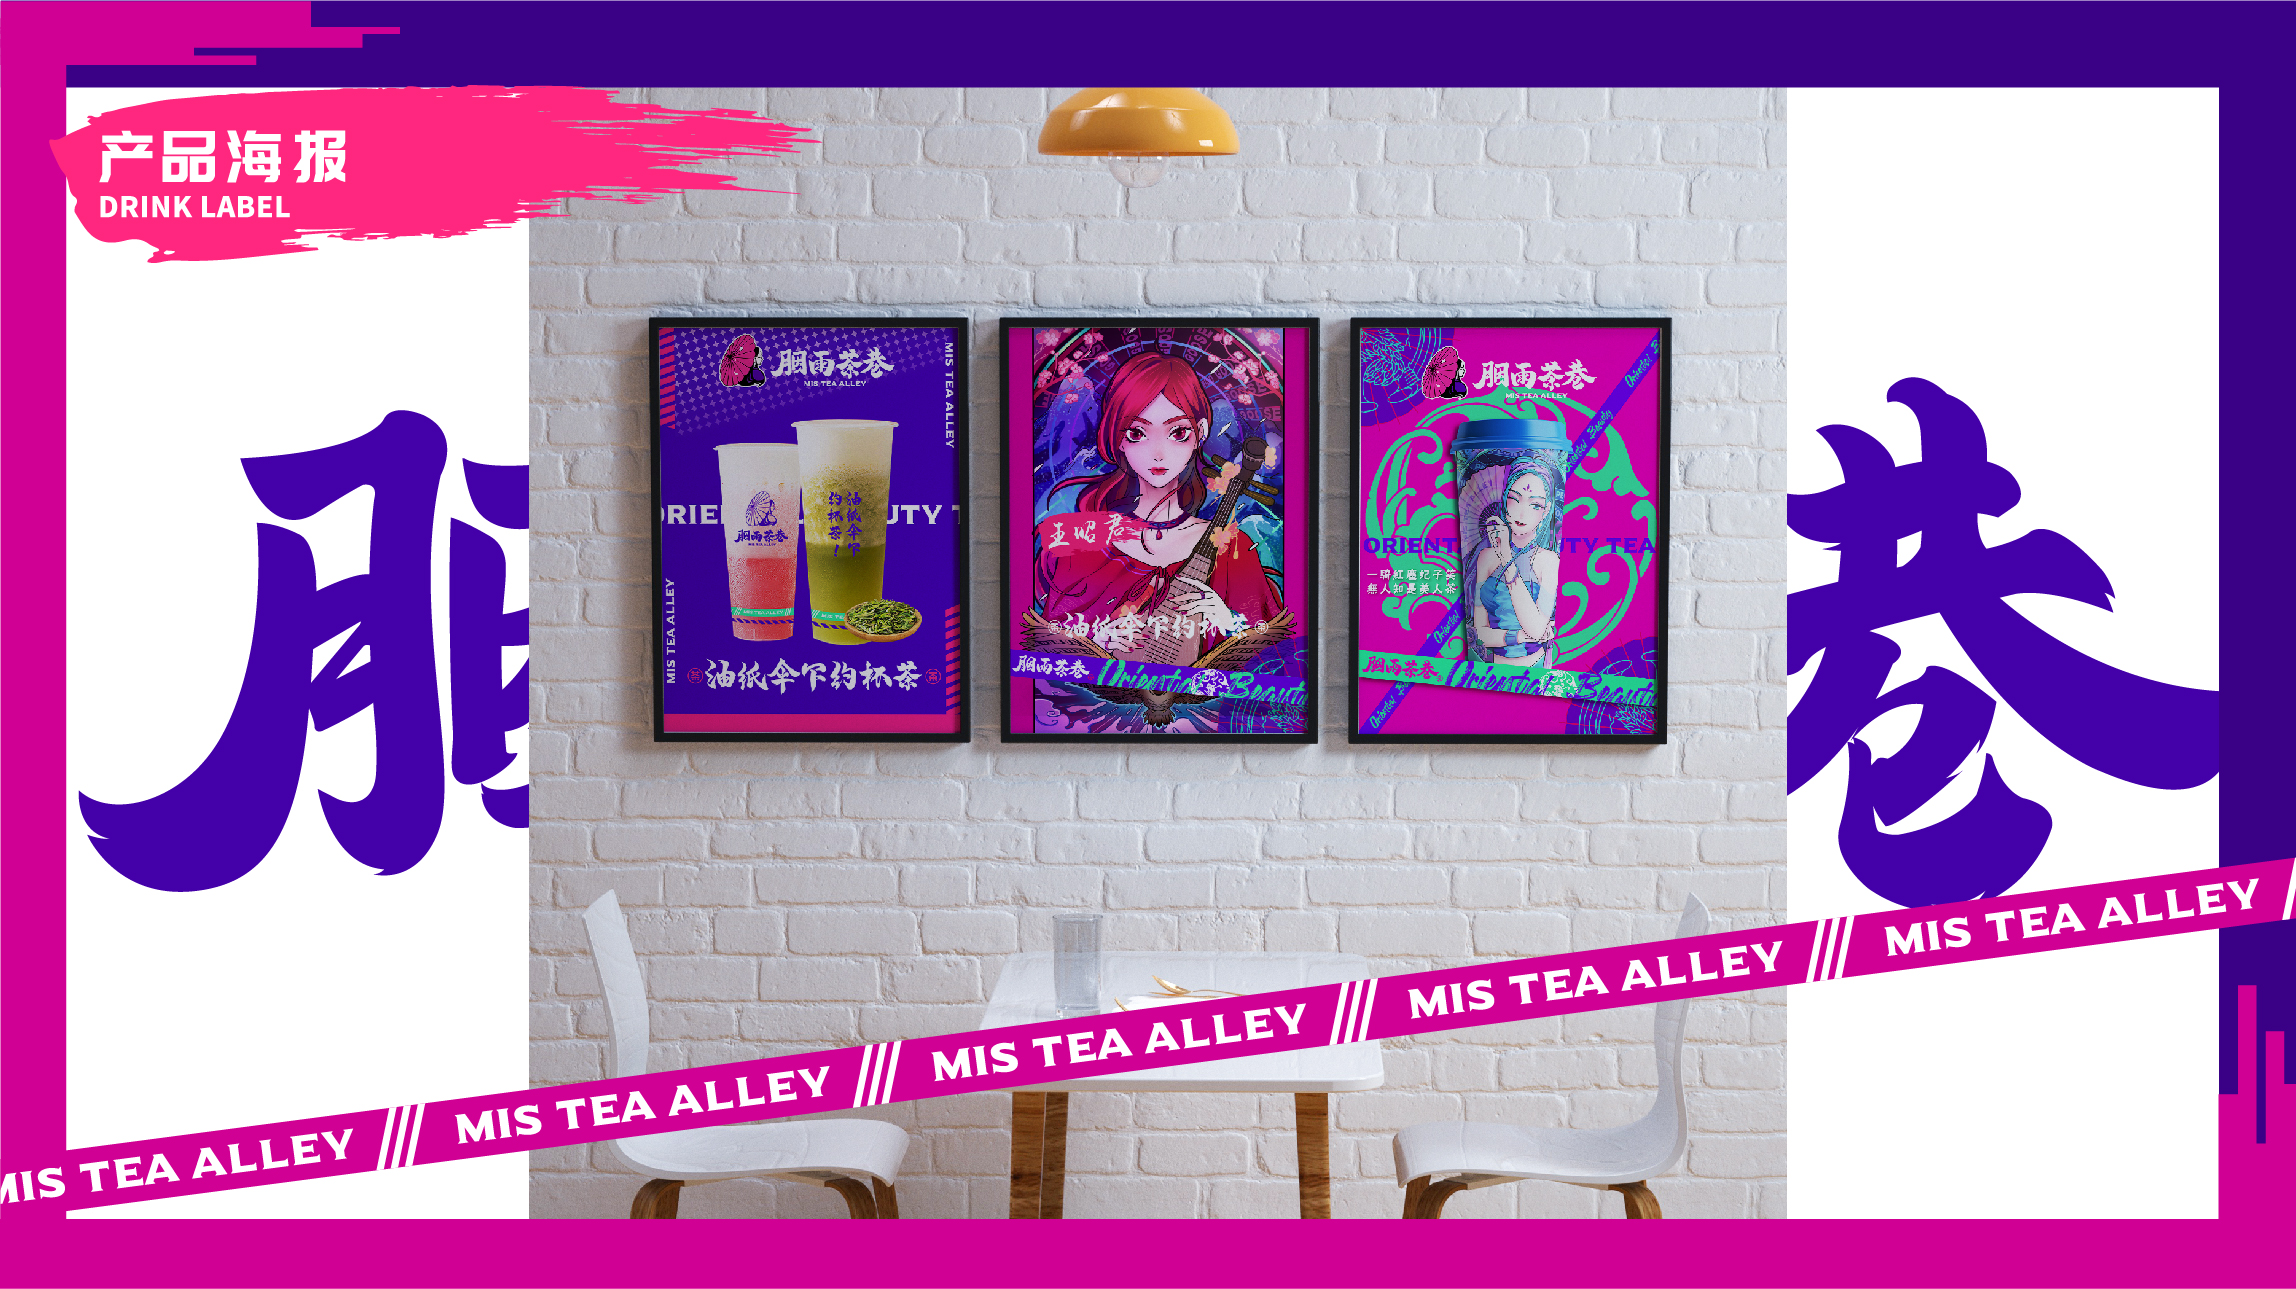 茶饮品牌胭雨茶巷室内海报设计